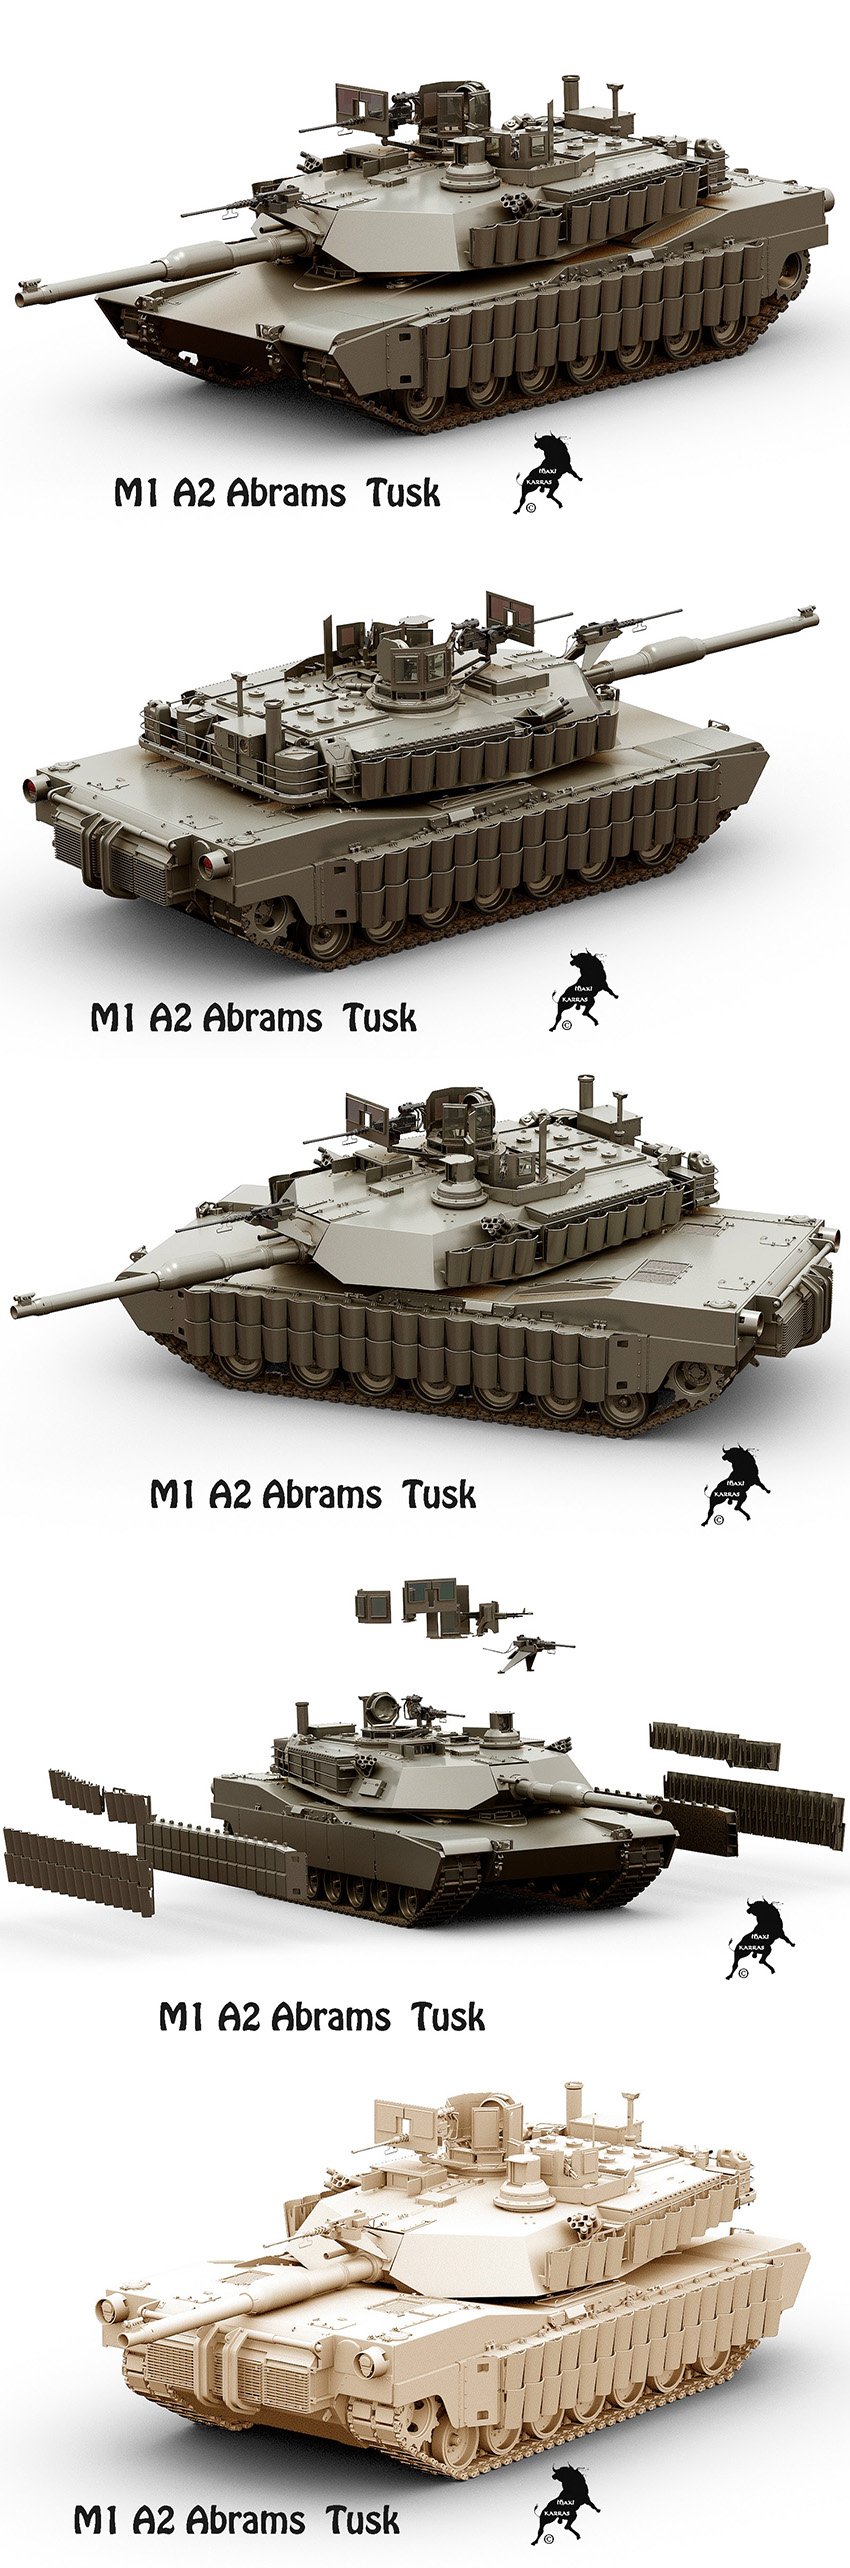 Tank M-1 A2 Abrams Tusk